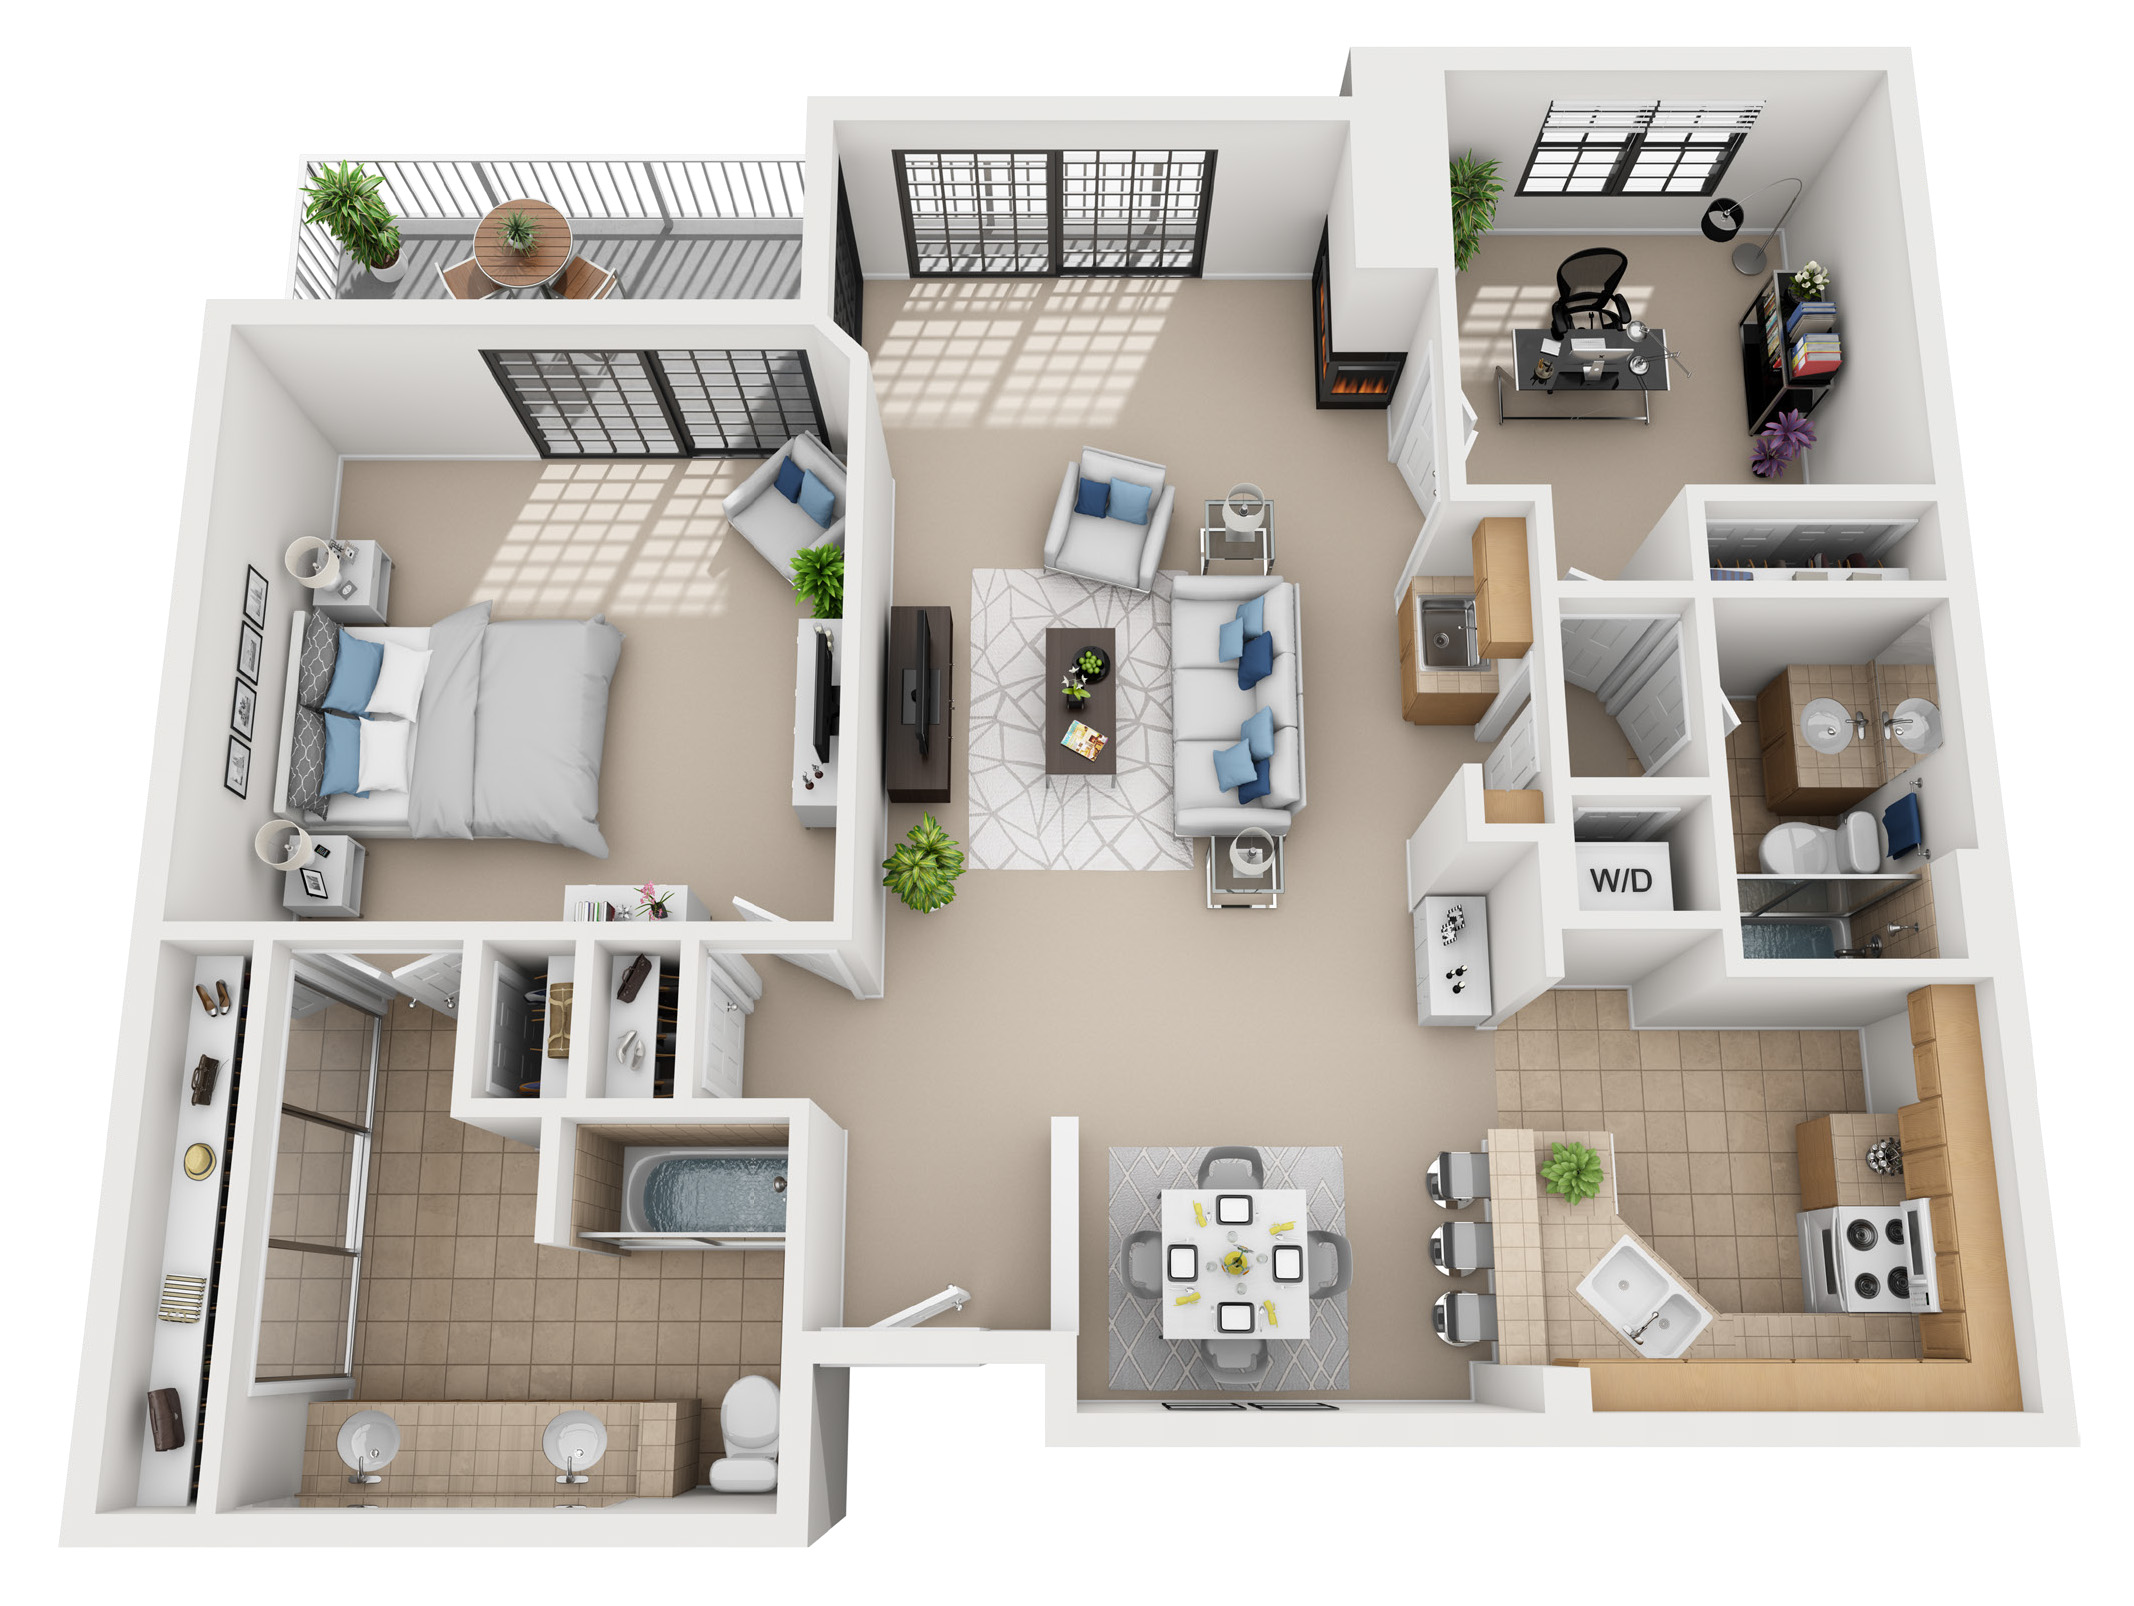 2 bedroom apartment floor plan